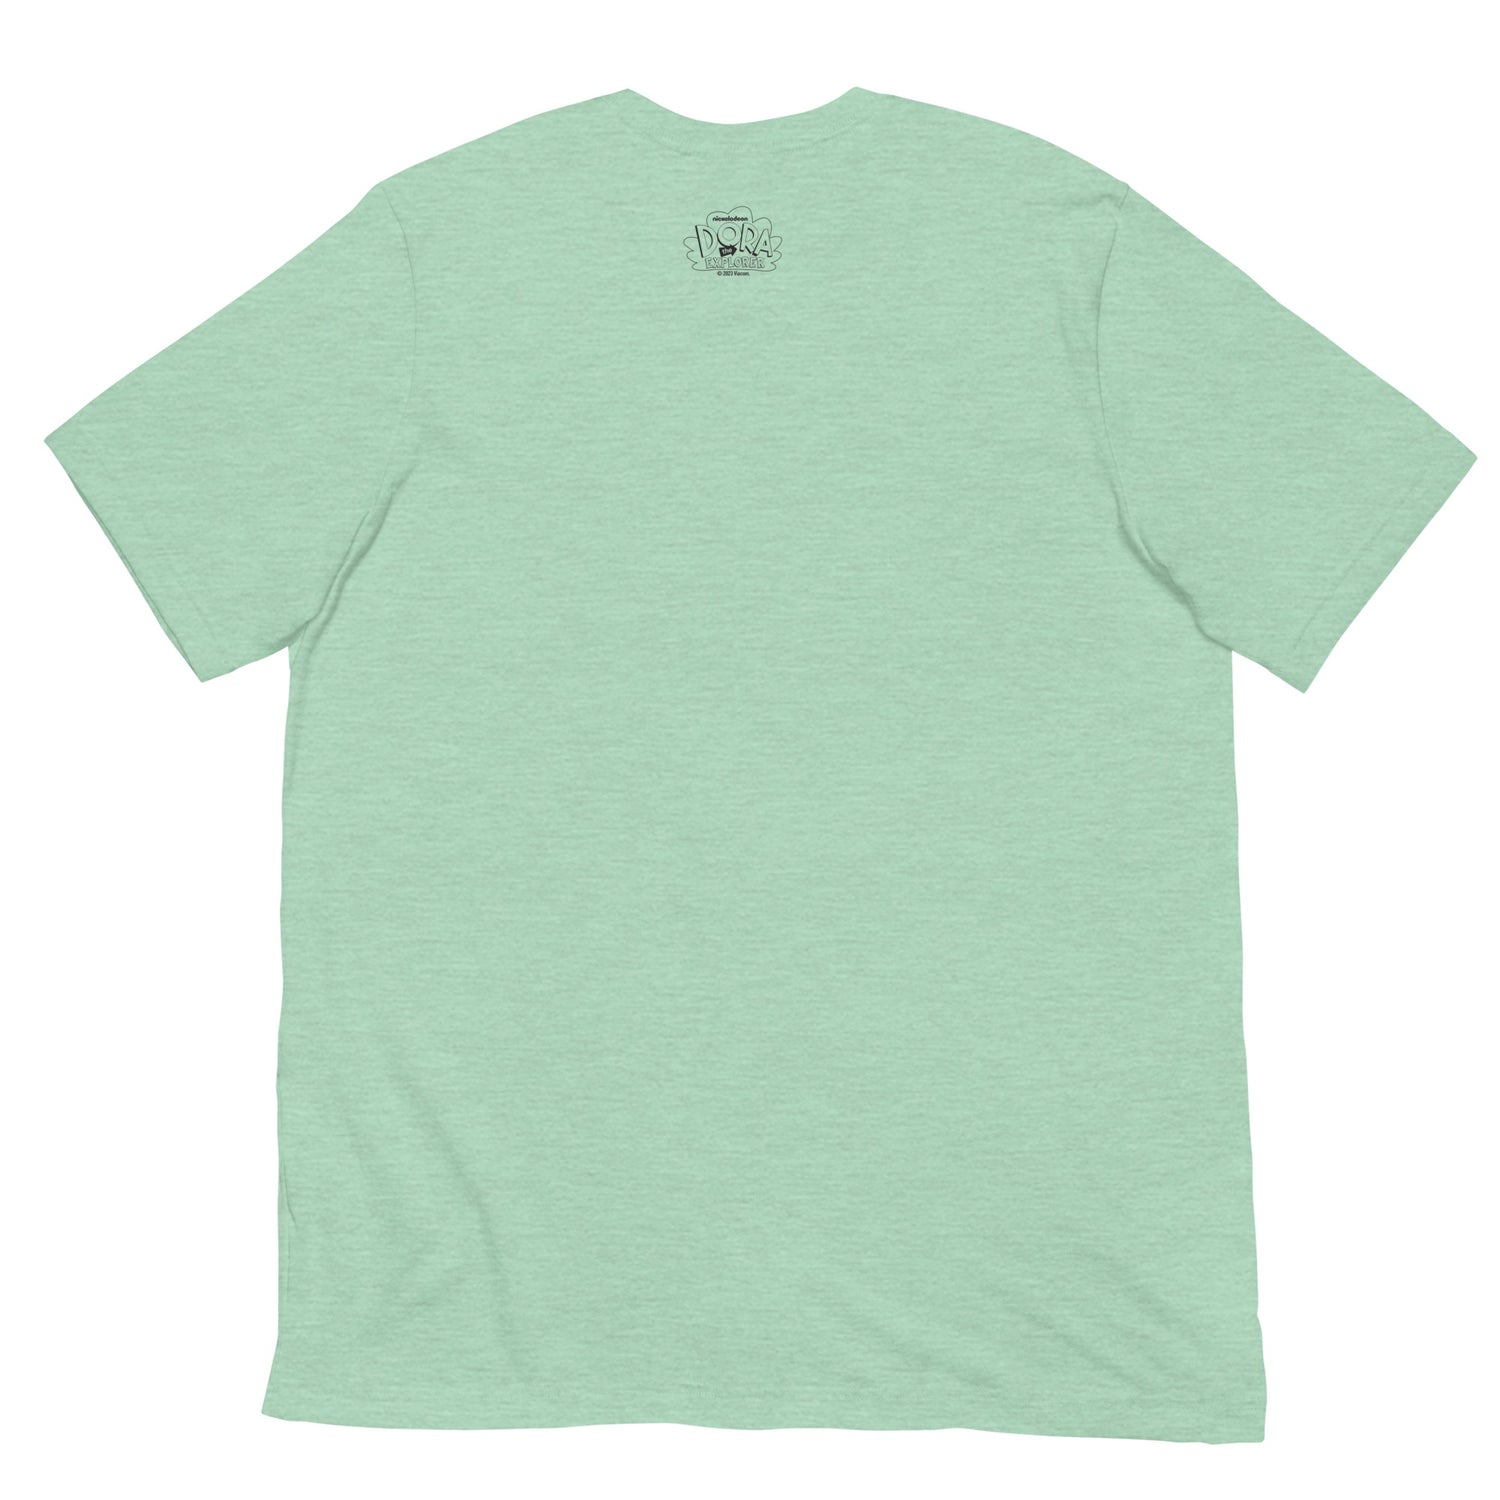 light green t shirt template